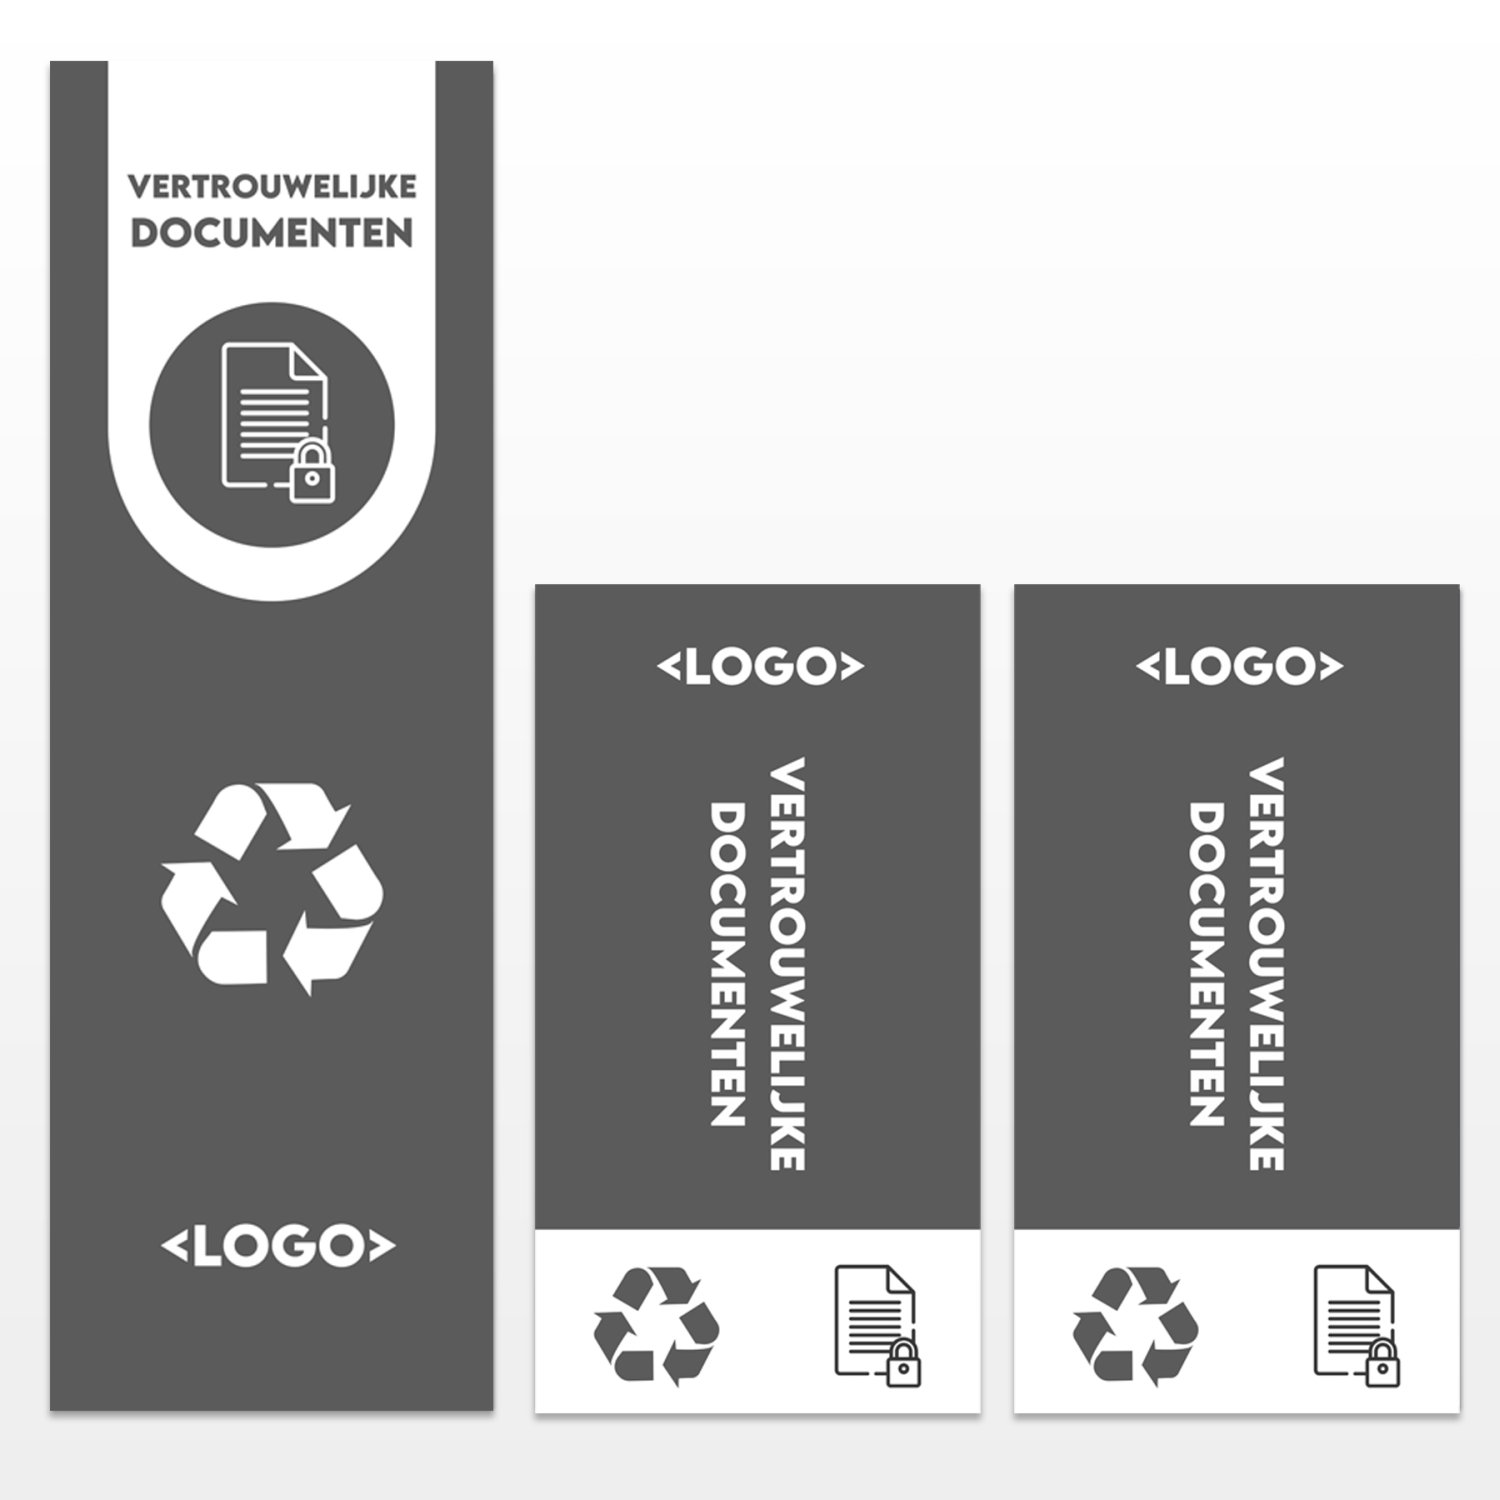 WasteWatcher 87 l. stickerset vertrouwelijke documenten bestaande uit één sticker voorkant en twee stickers voor de zijkant